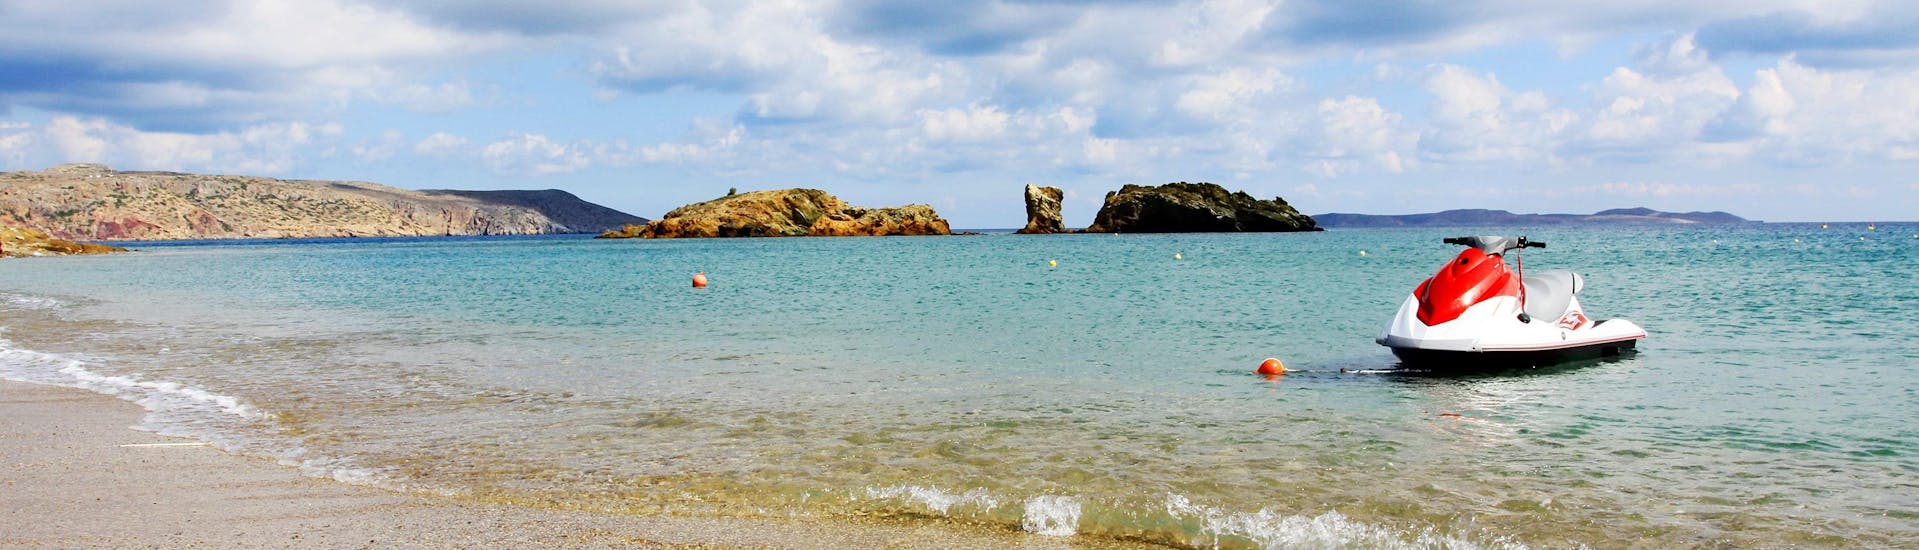 Ein Jetski an einem Strand auf Kreta, wo viele Wassersportaktivitäten stattfinden.